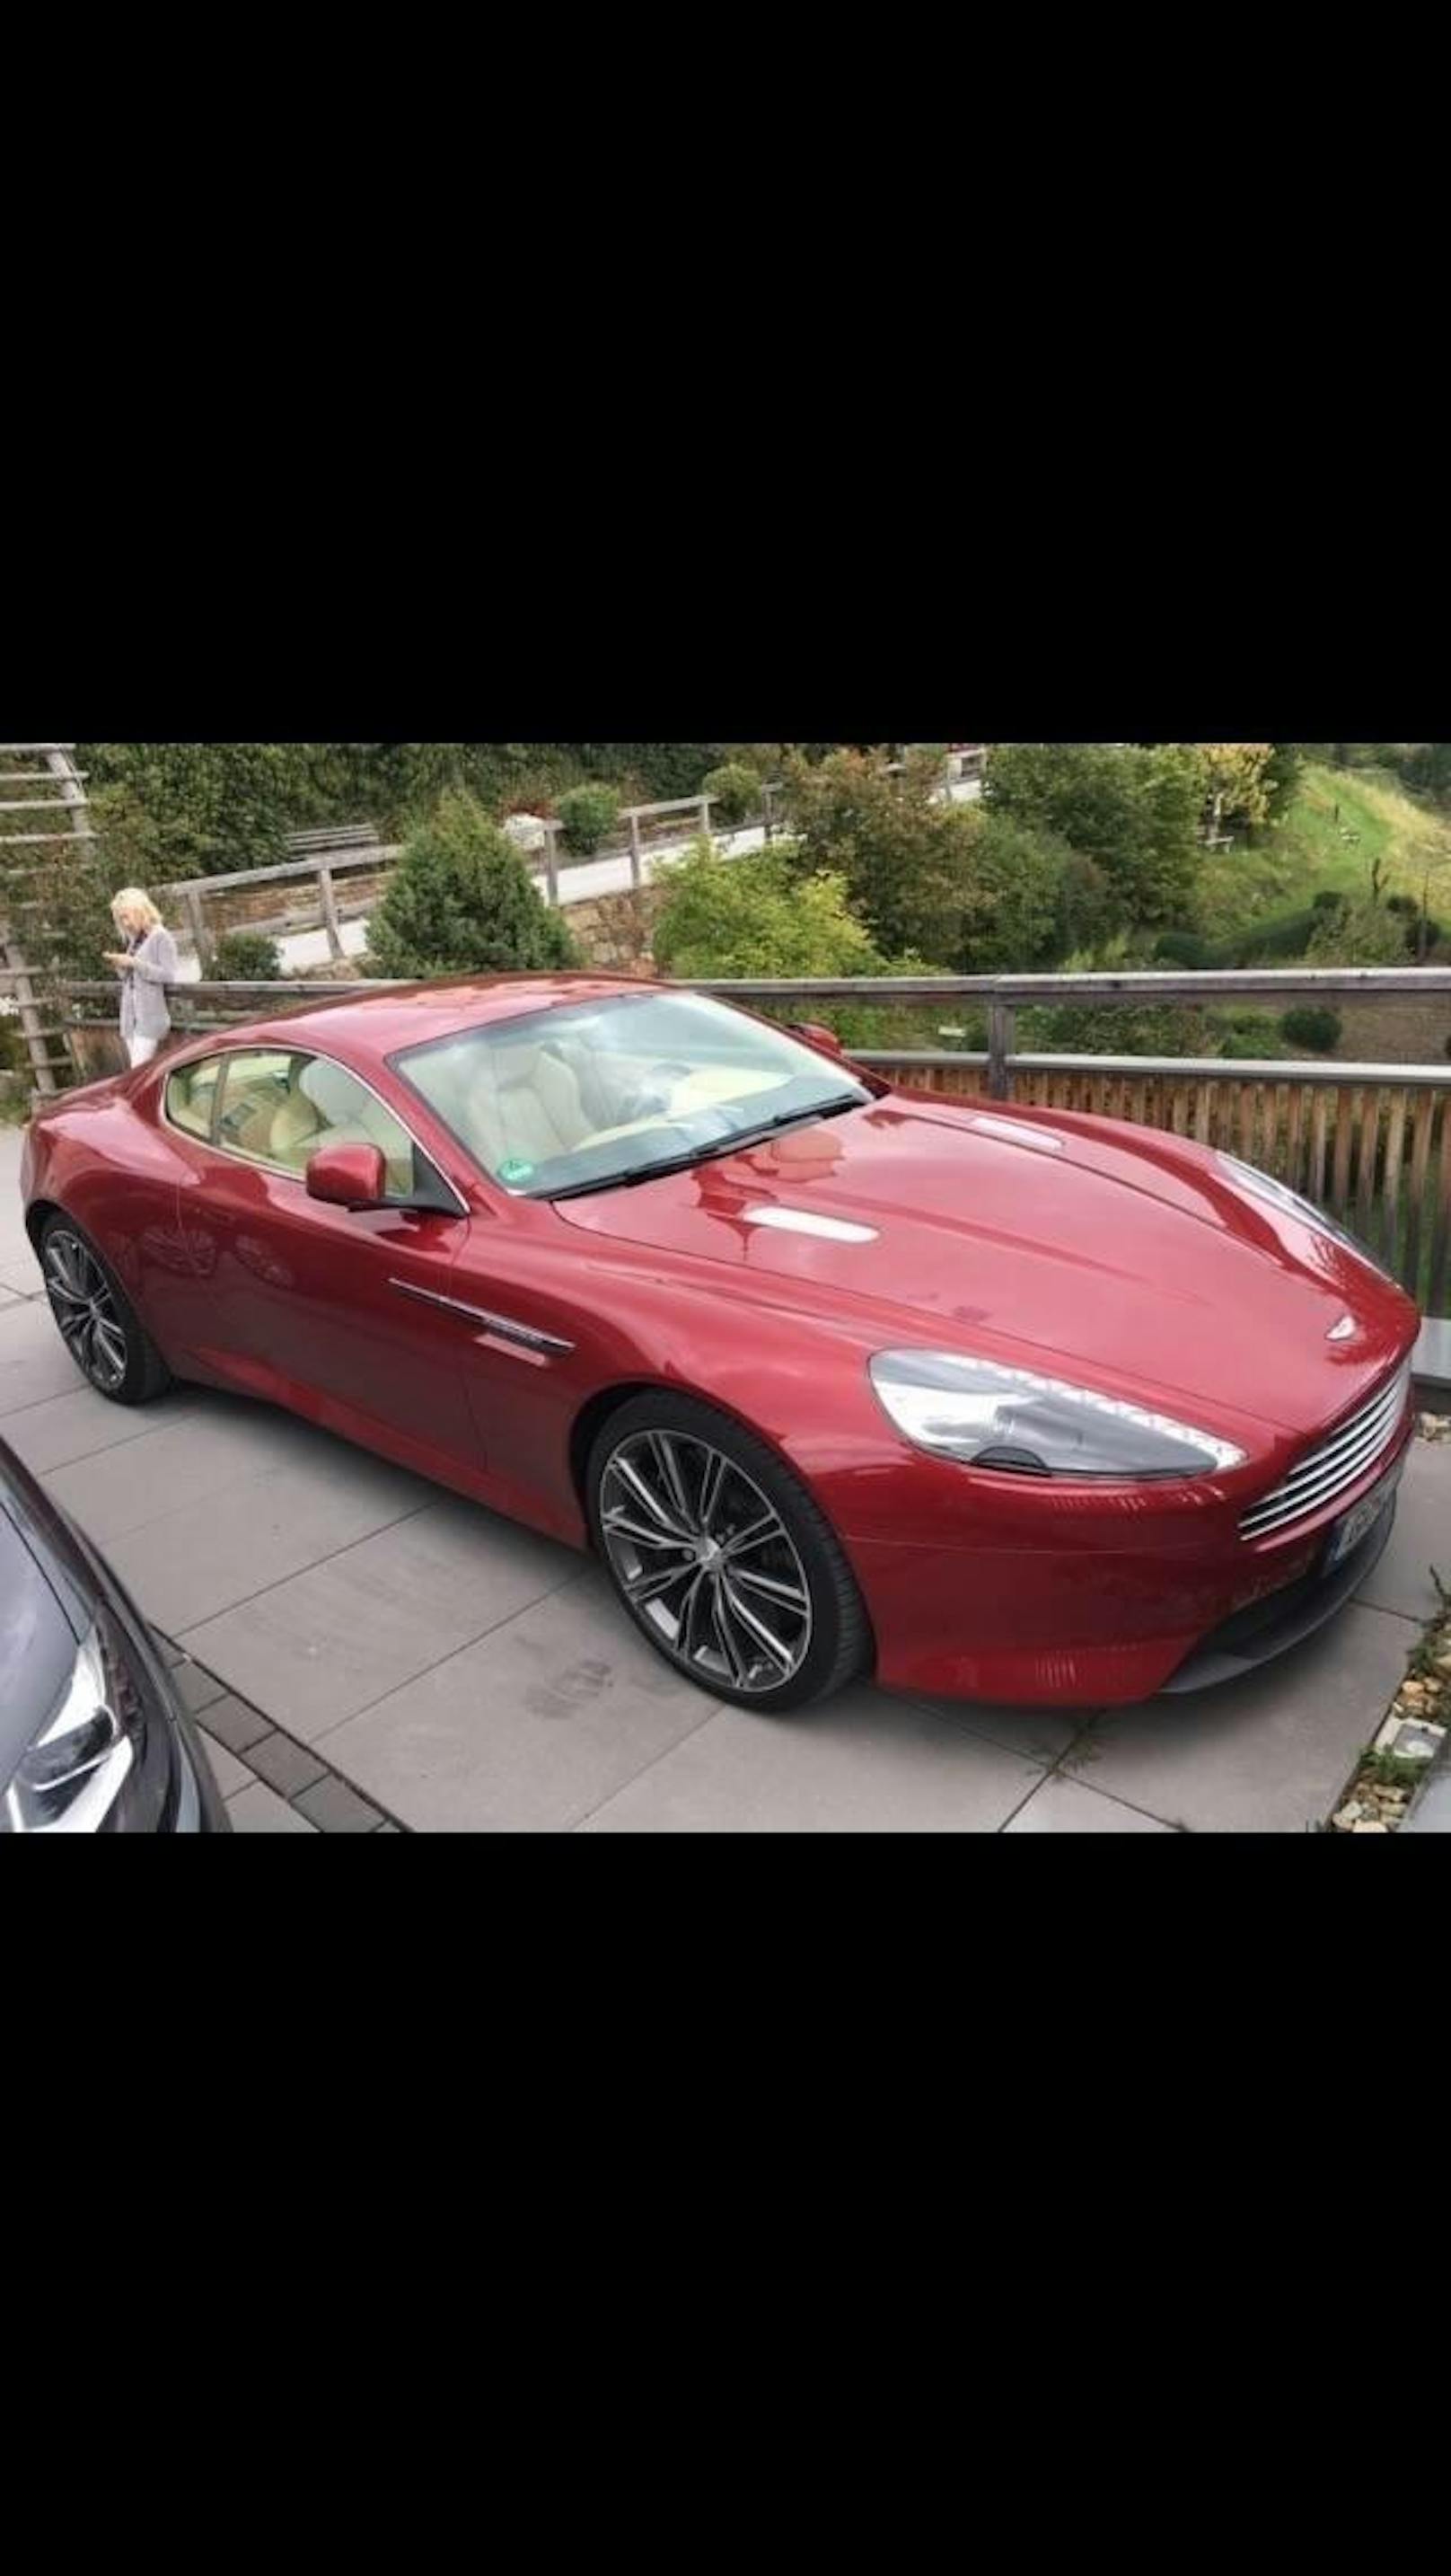 Aston Martin - ein absoluter Hit